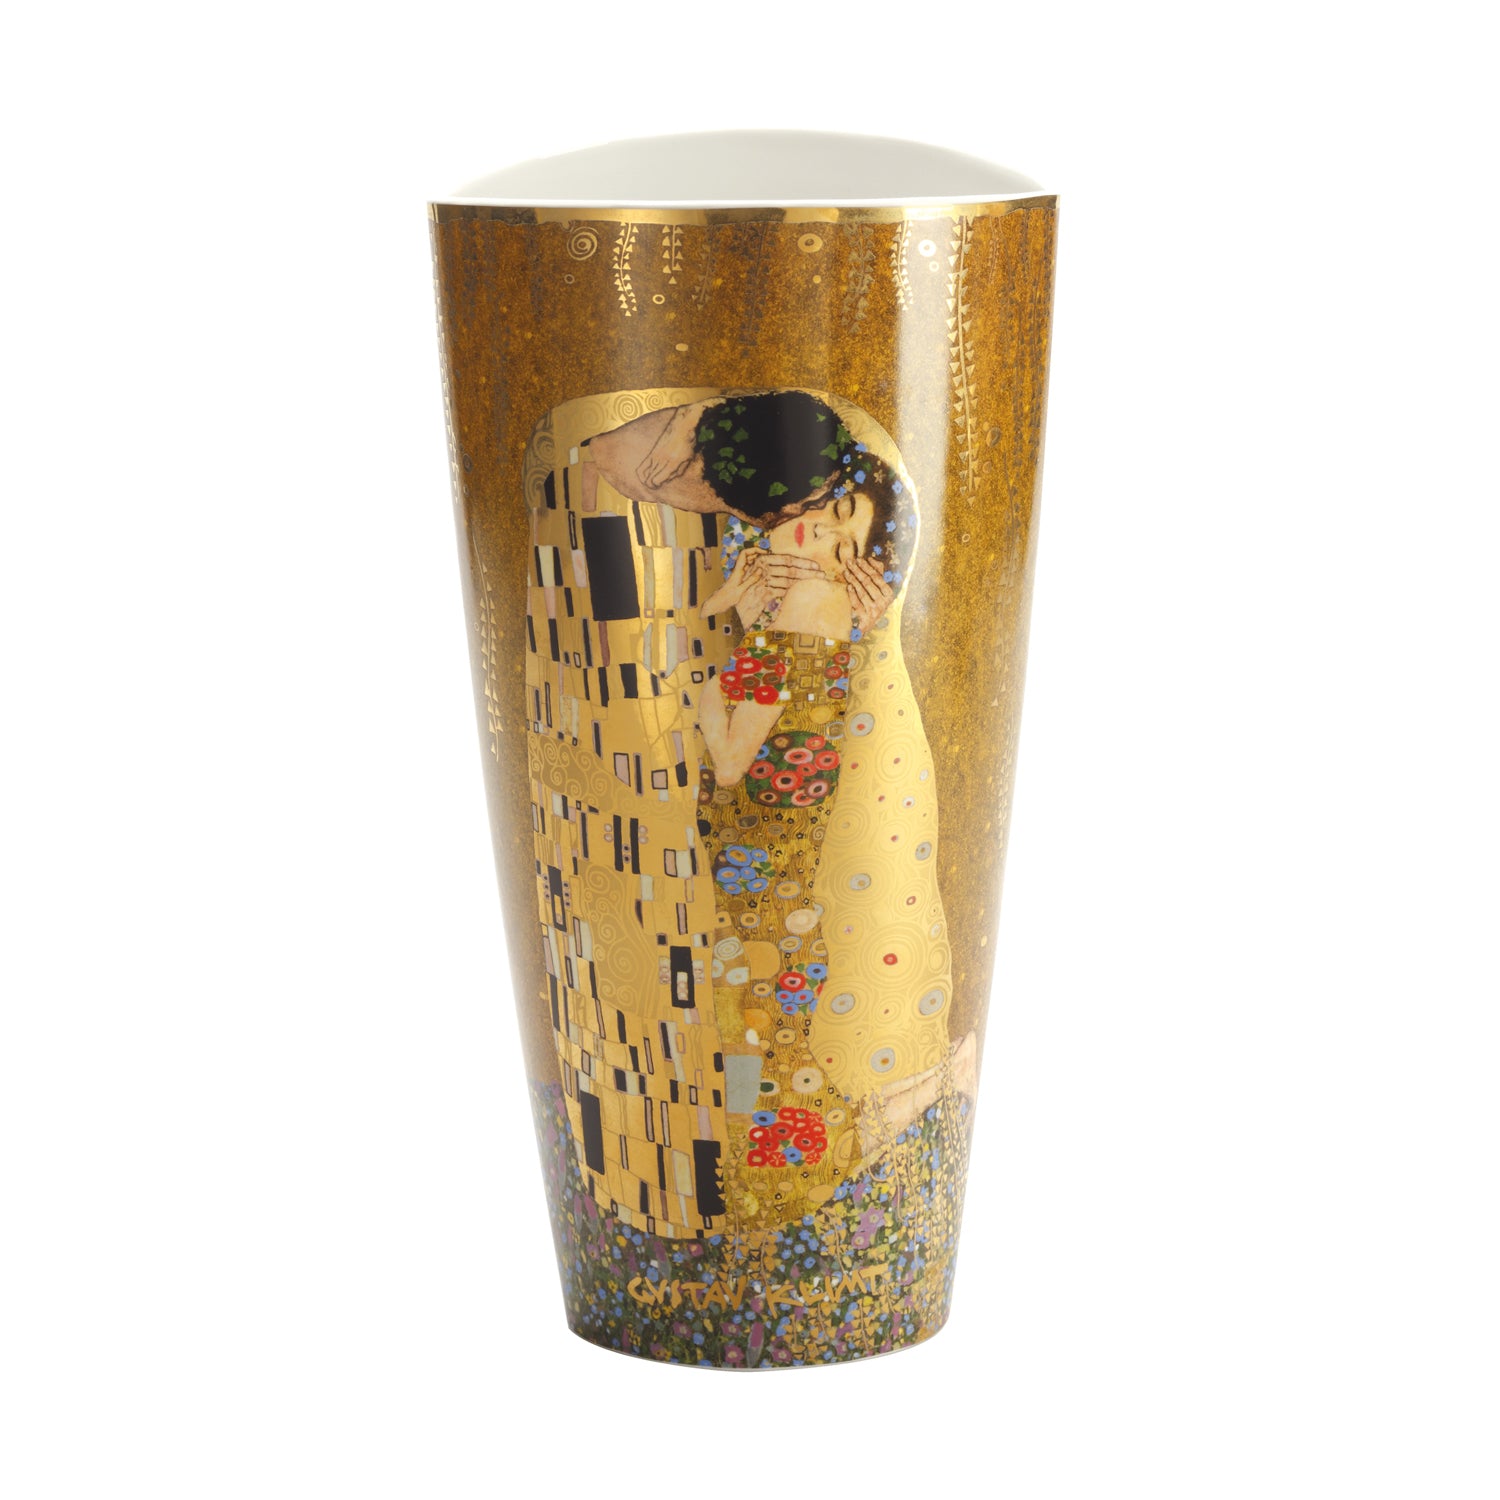 Klimt "The Kiss" vase